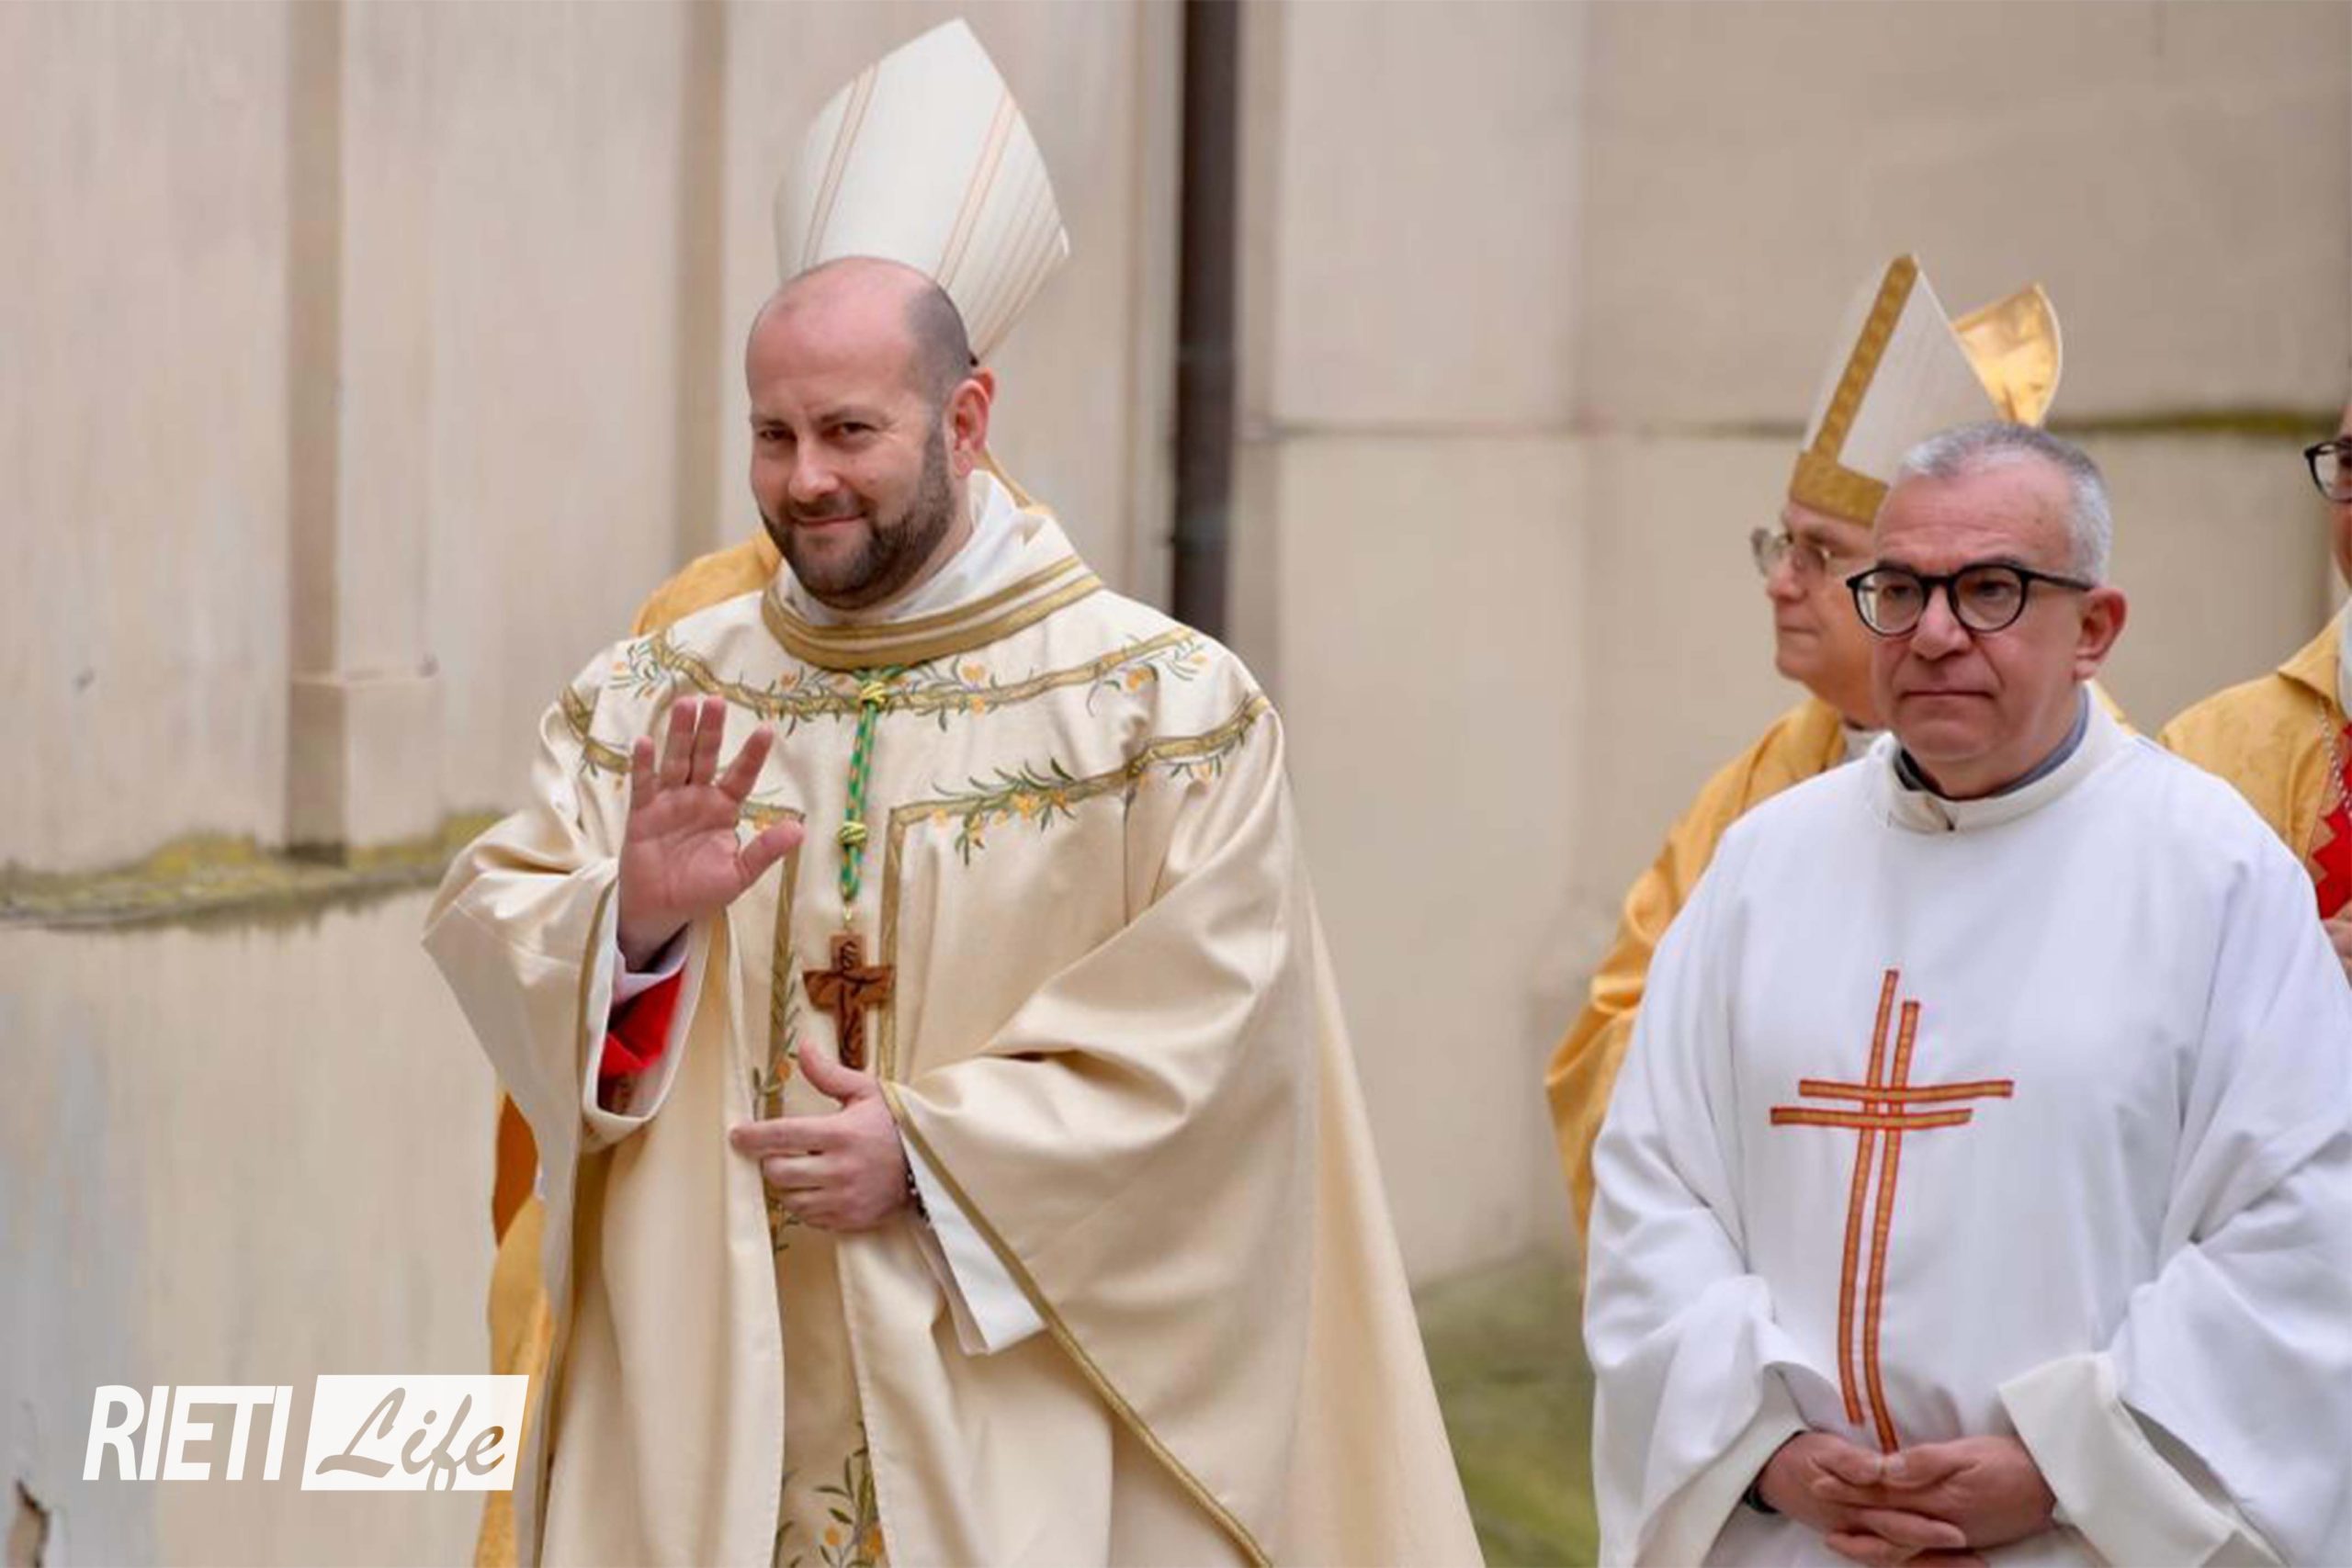 Il primo discorso del vescovo di Rieti Vito Piccinonna: Ringrazio Dio per  la presenza dei poveri nella mia vita - Cronaca - Una finestra sempre  aperta su Bitonto - DaBitonto